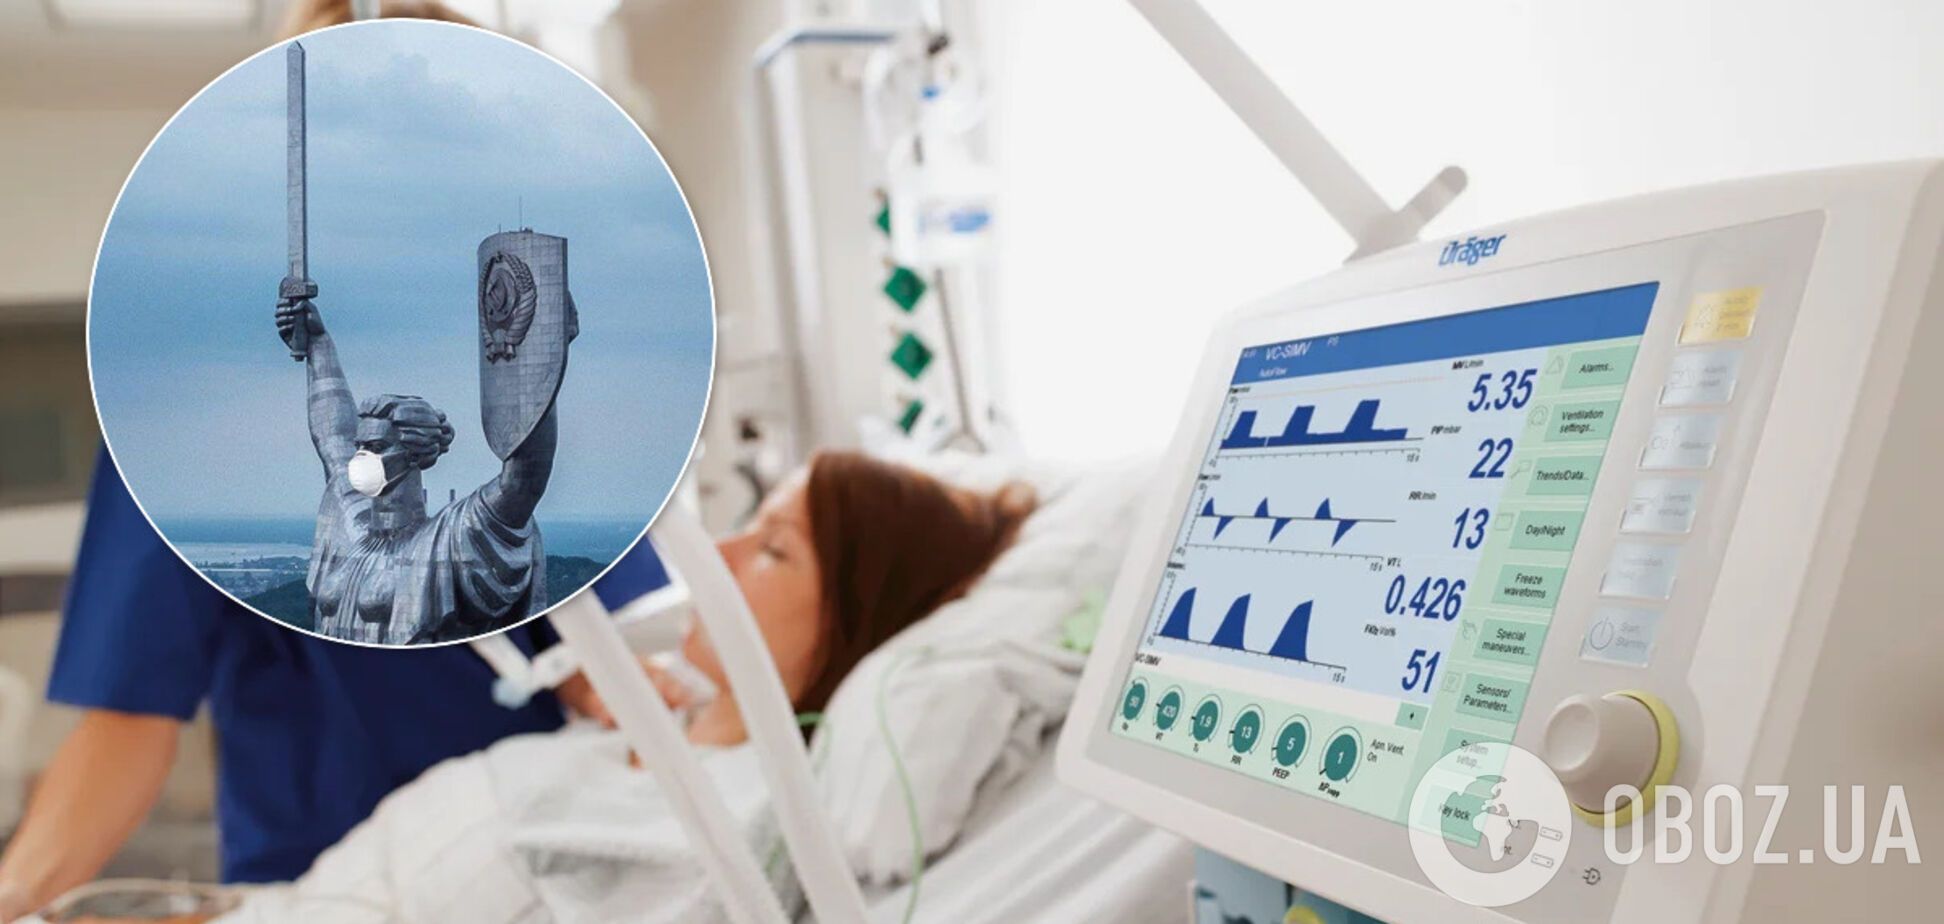 Кличко опроверг слухи о недостаточном количестве аппаратов ИВЛ в больницах Киева. Иллюстрация